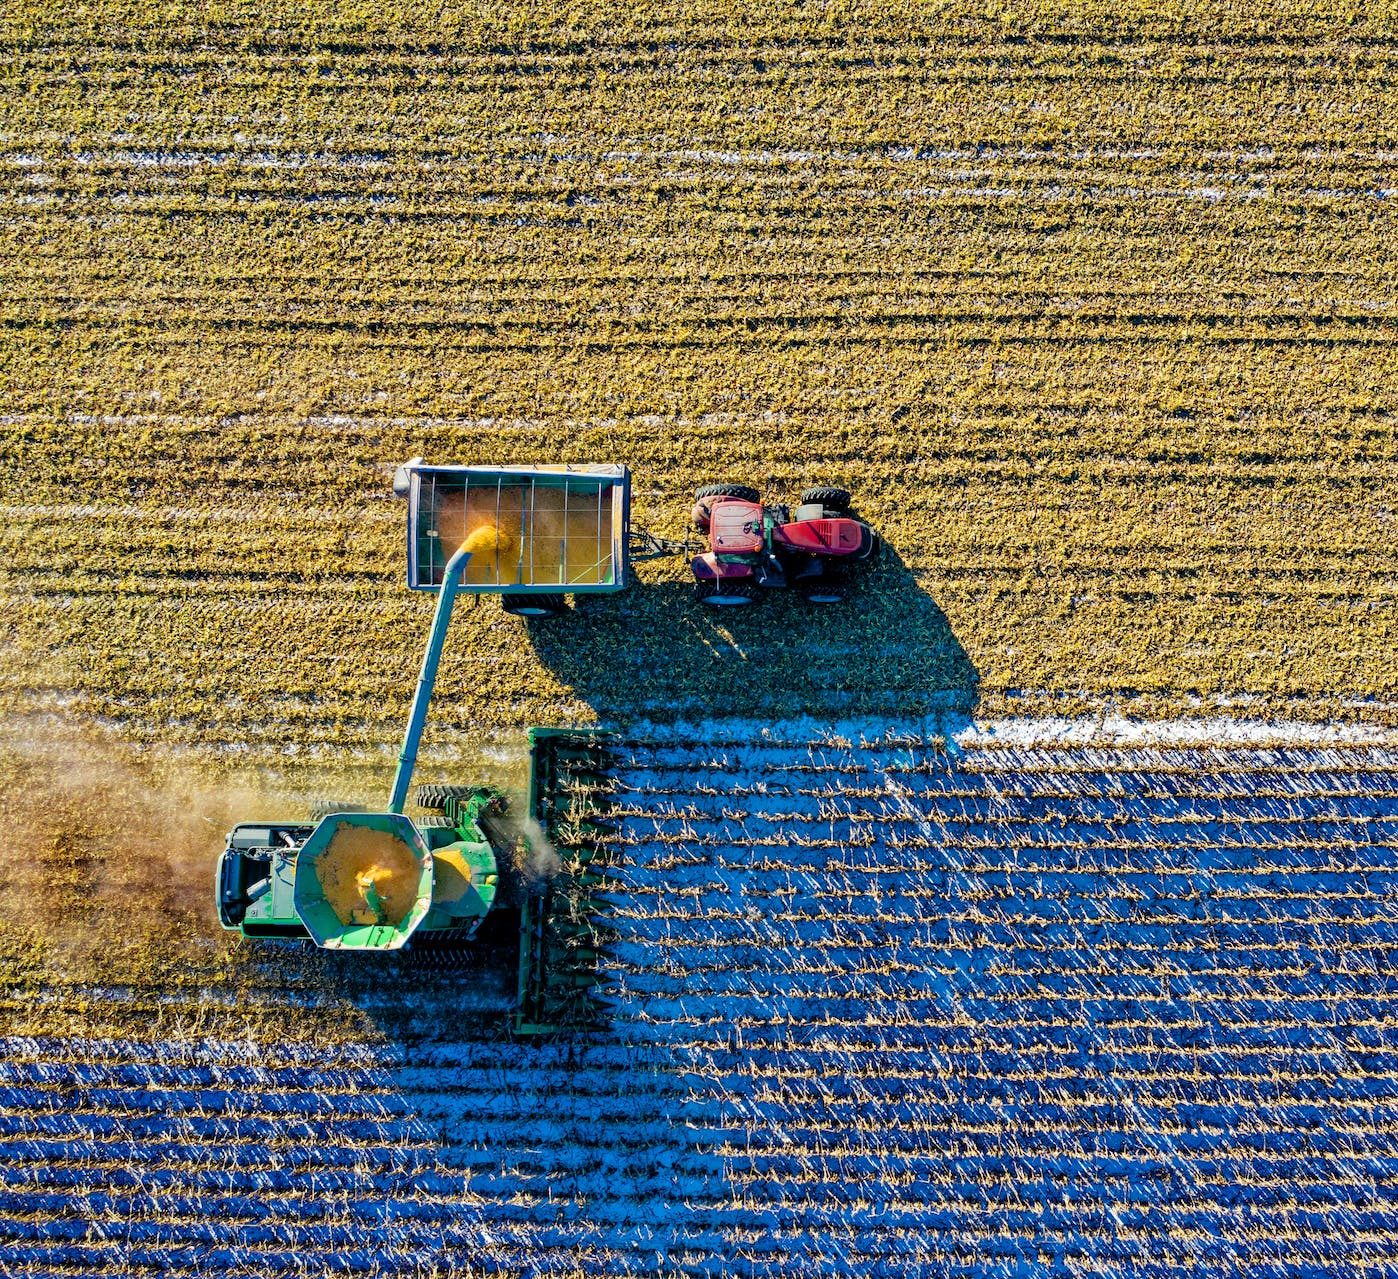 La plataforma de Bluewhite permite ejecutar todas las operaciones agrícolas fácilmente desde cualquier lugar, con el mismo tractor, lo que significa que crecerá más con menos. Foto: Tom Fisk/Pexels.